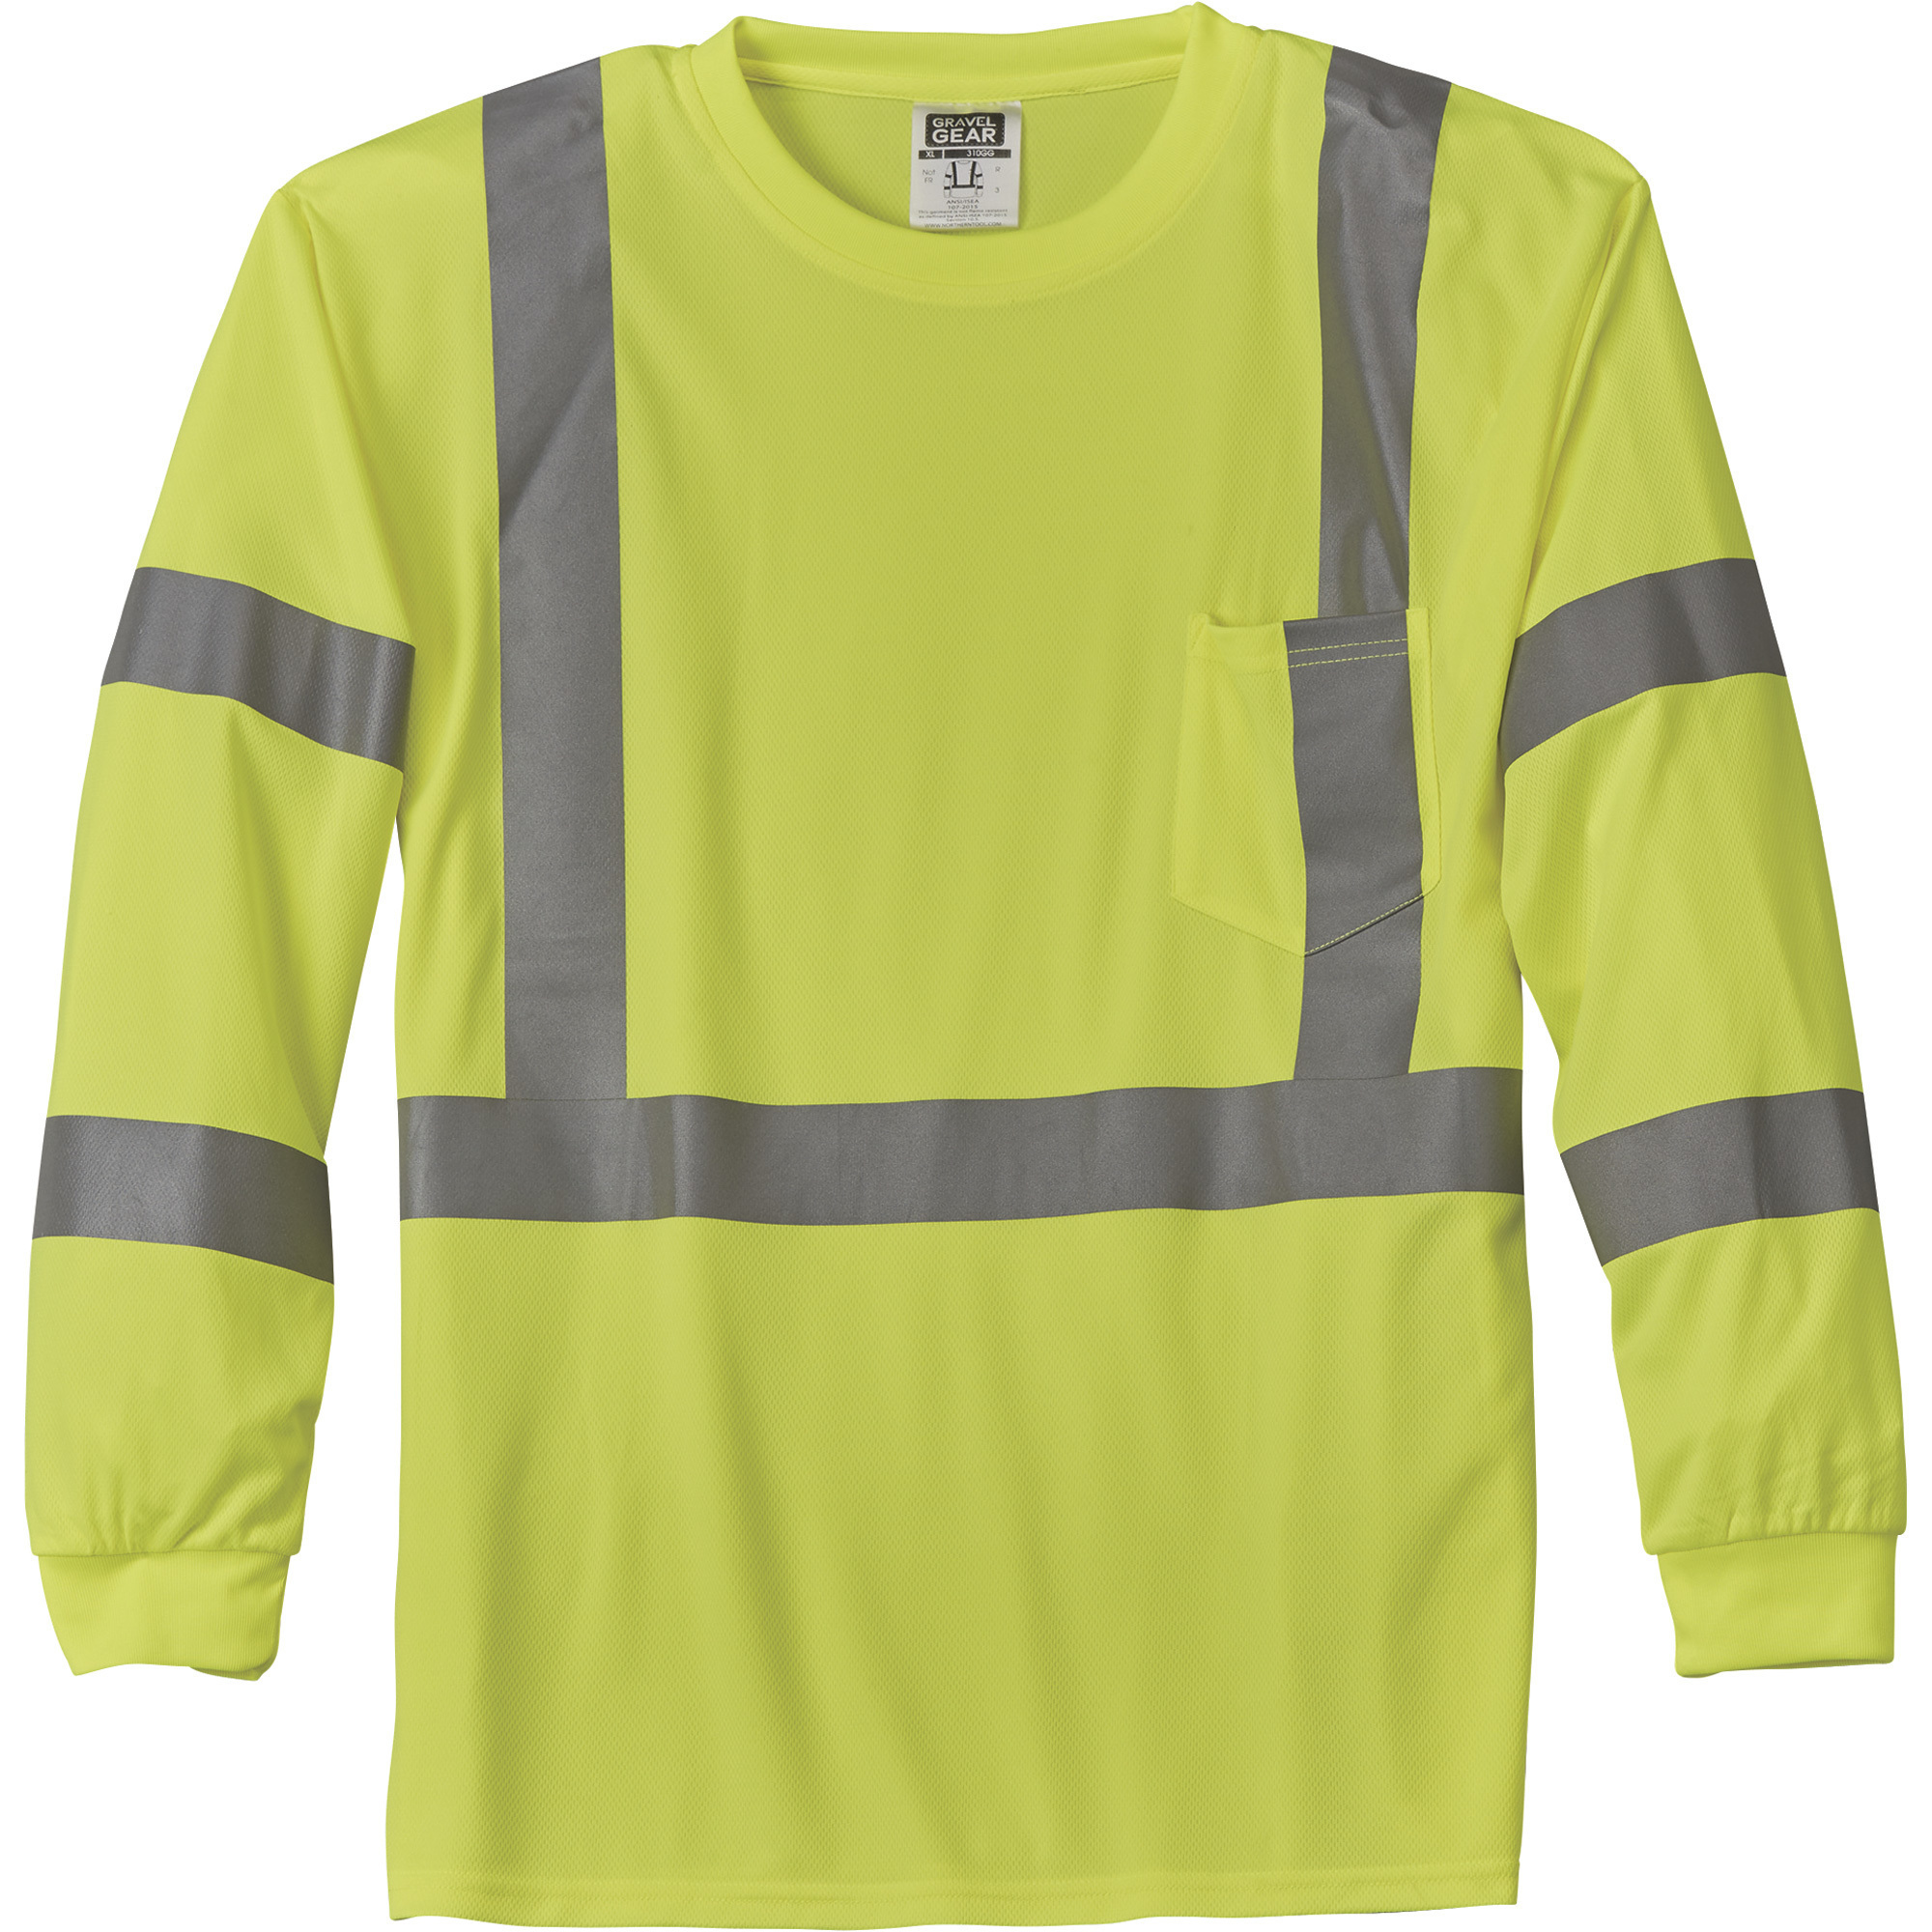 Gravel Gear HV Menâs Class 3 High Visibility High-Performance Long Sleeve T-Shirt â Lime, 3XL